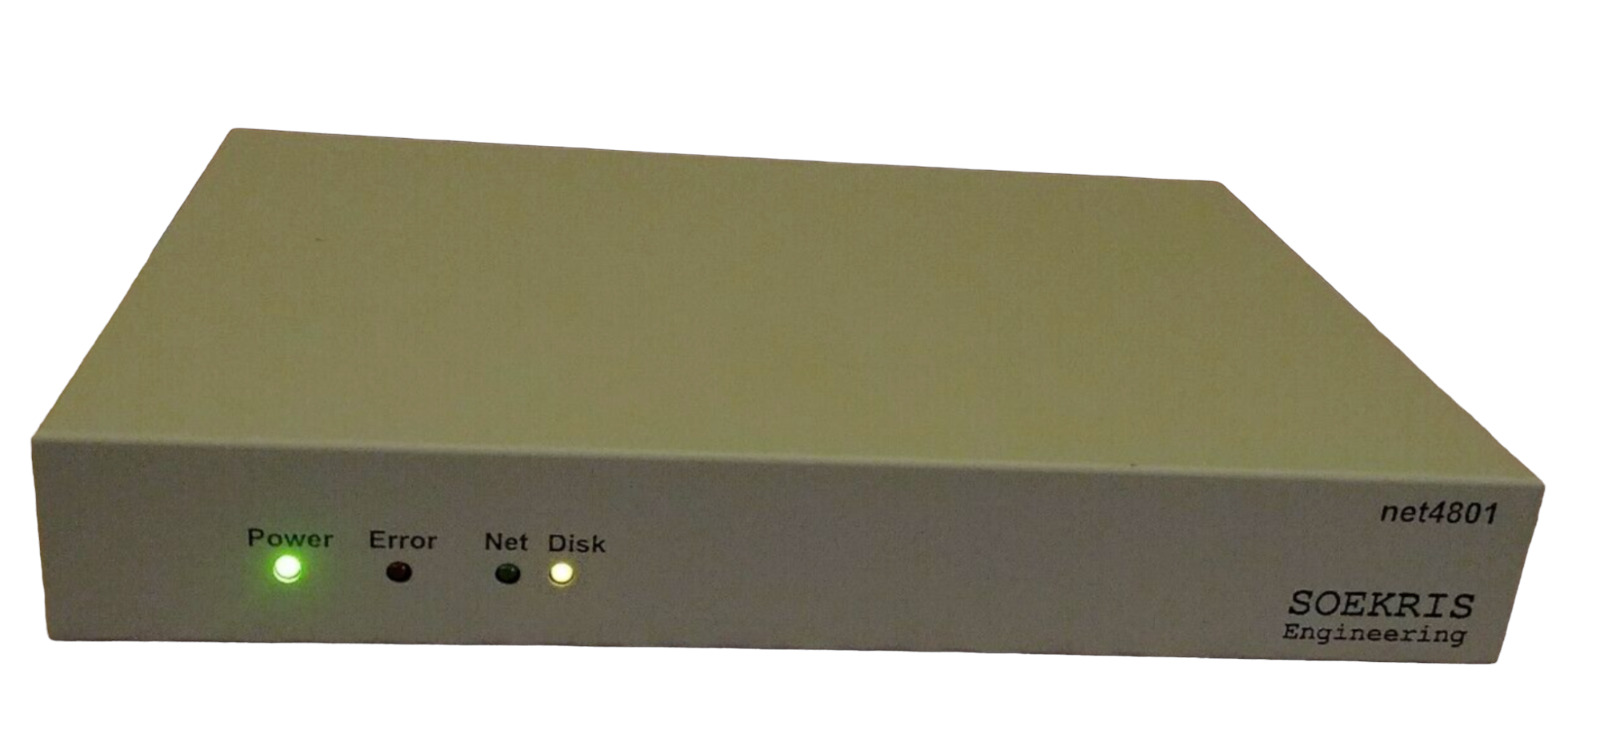 Soekris Engineering Net4801–50 Firewall Vpn Router